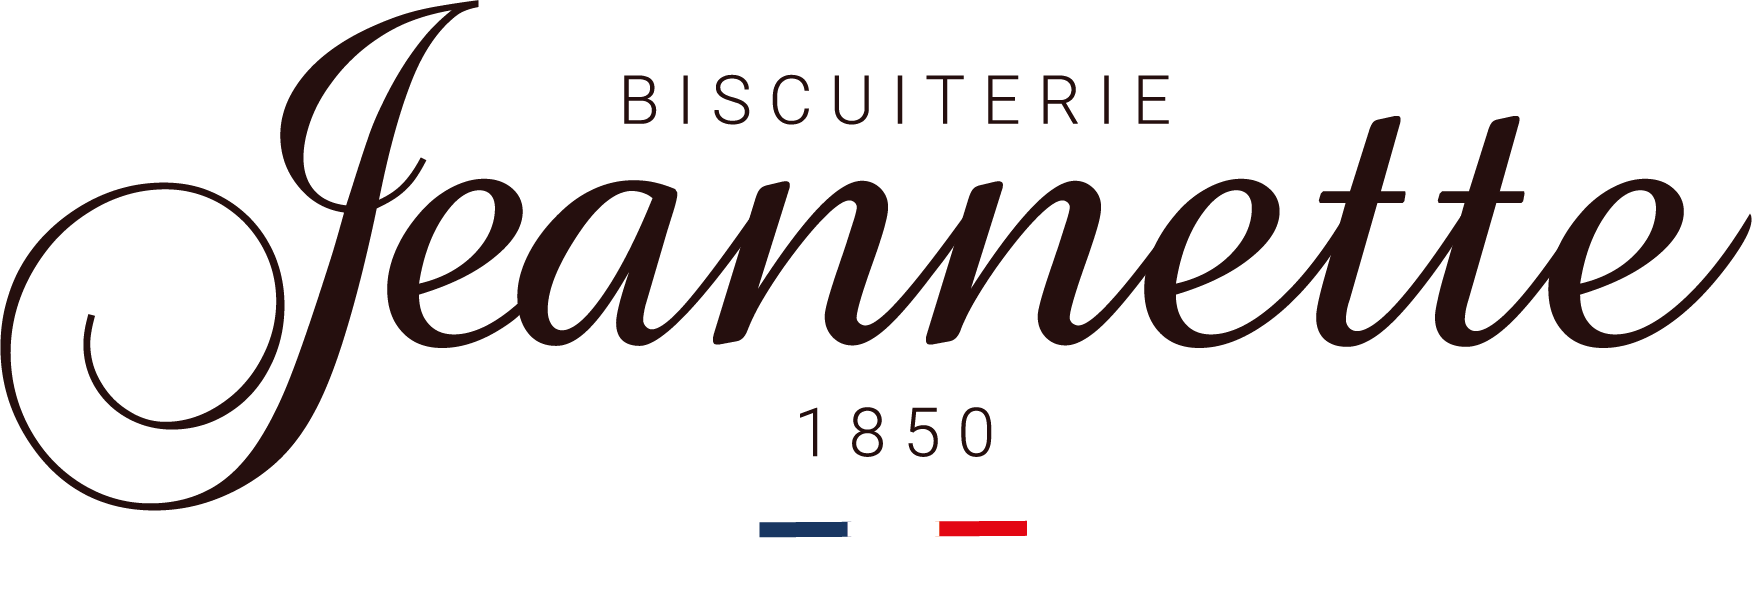 Jeannette 1850